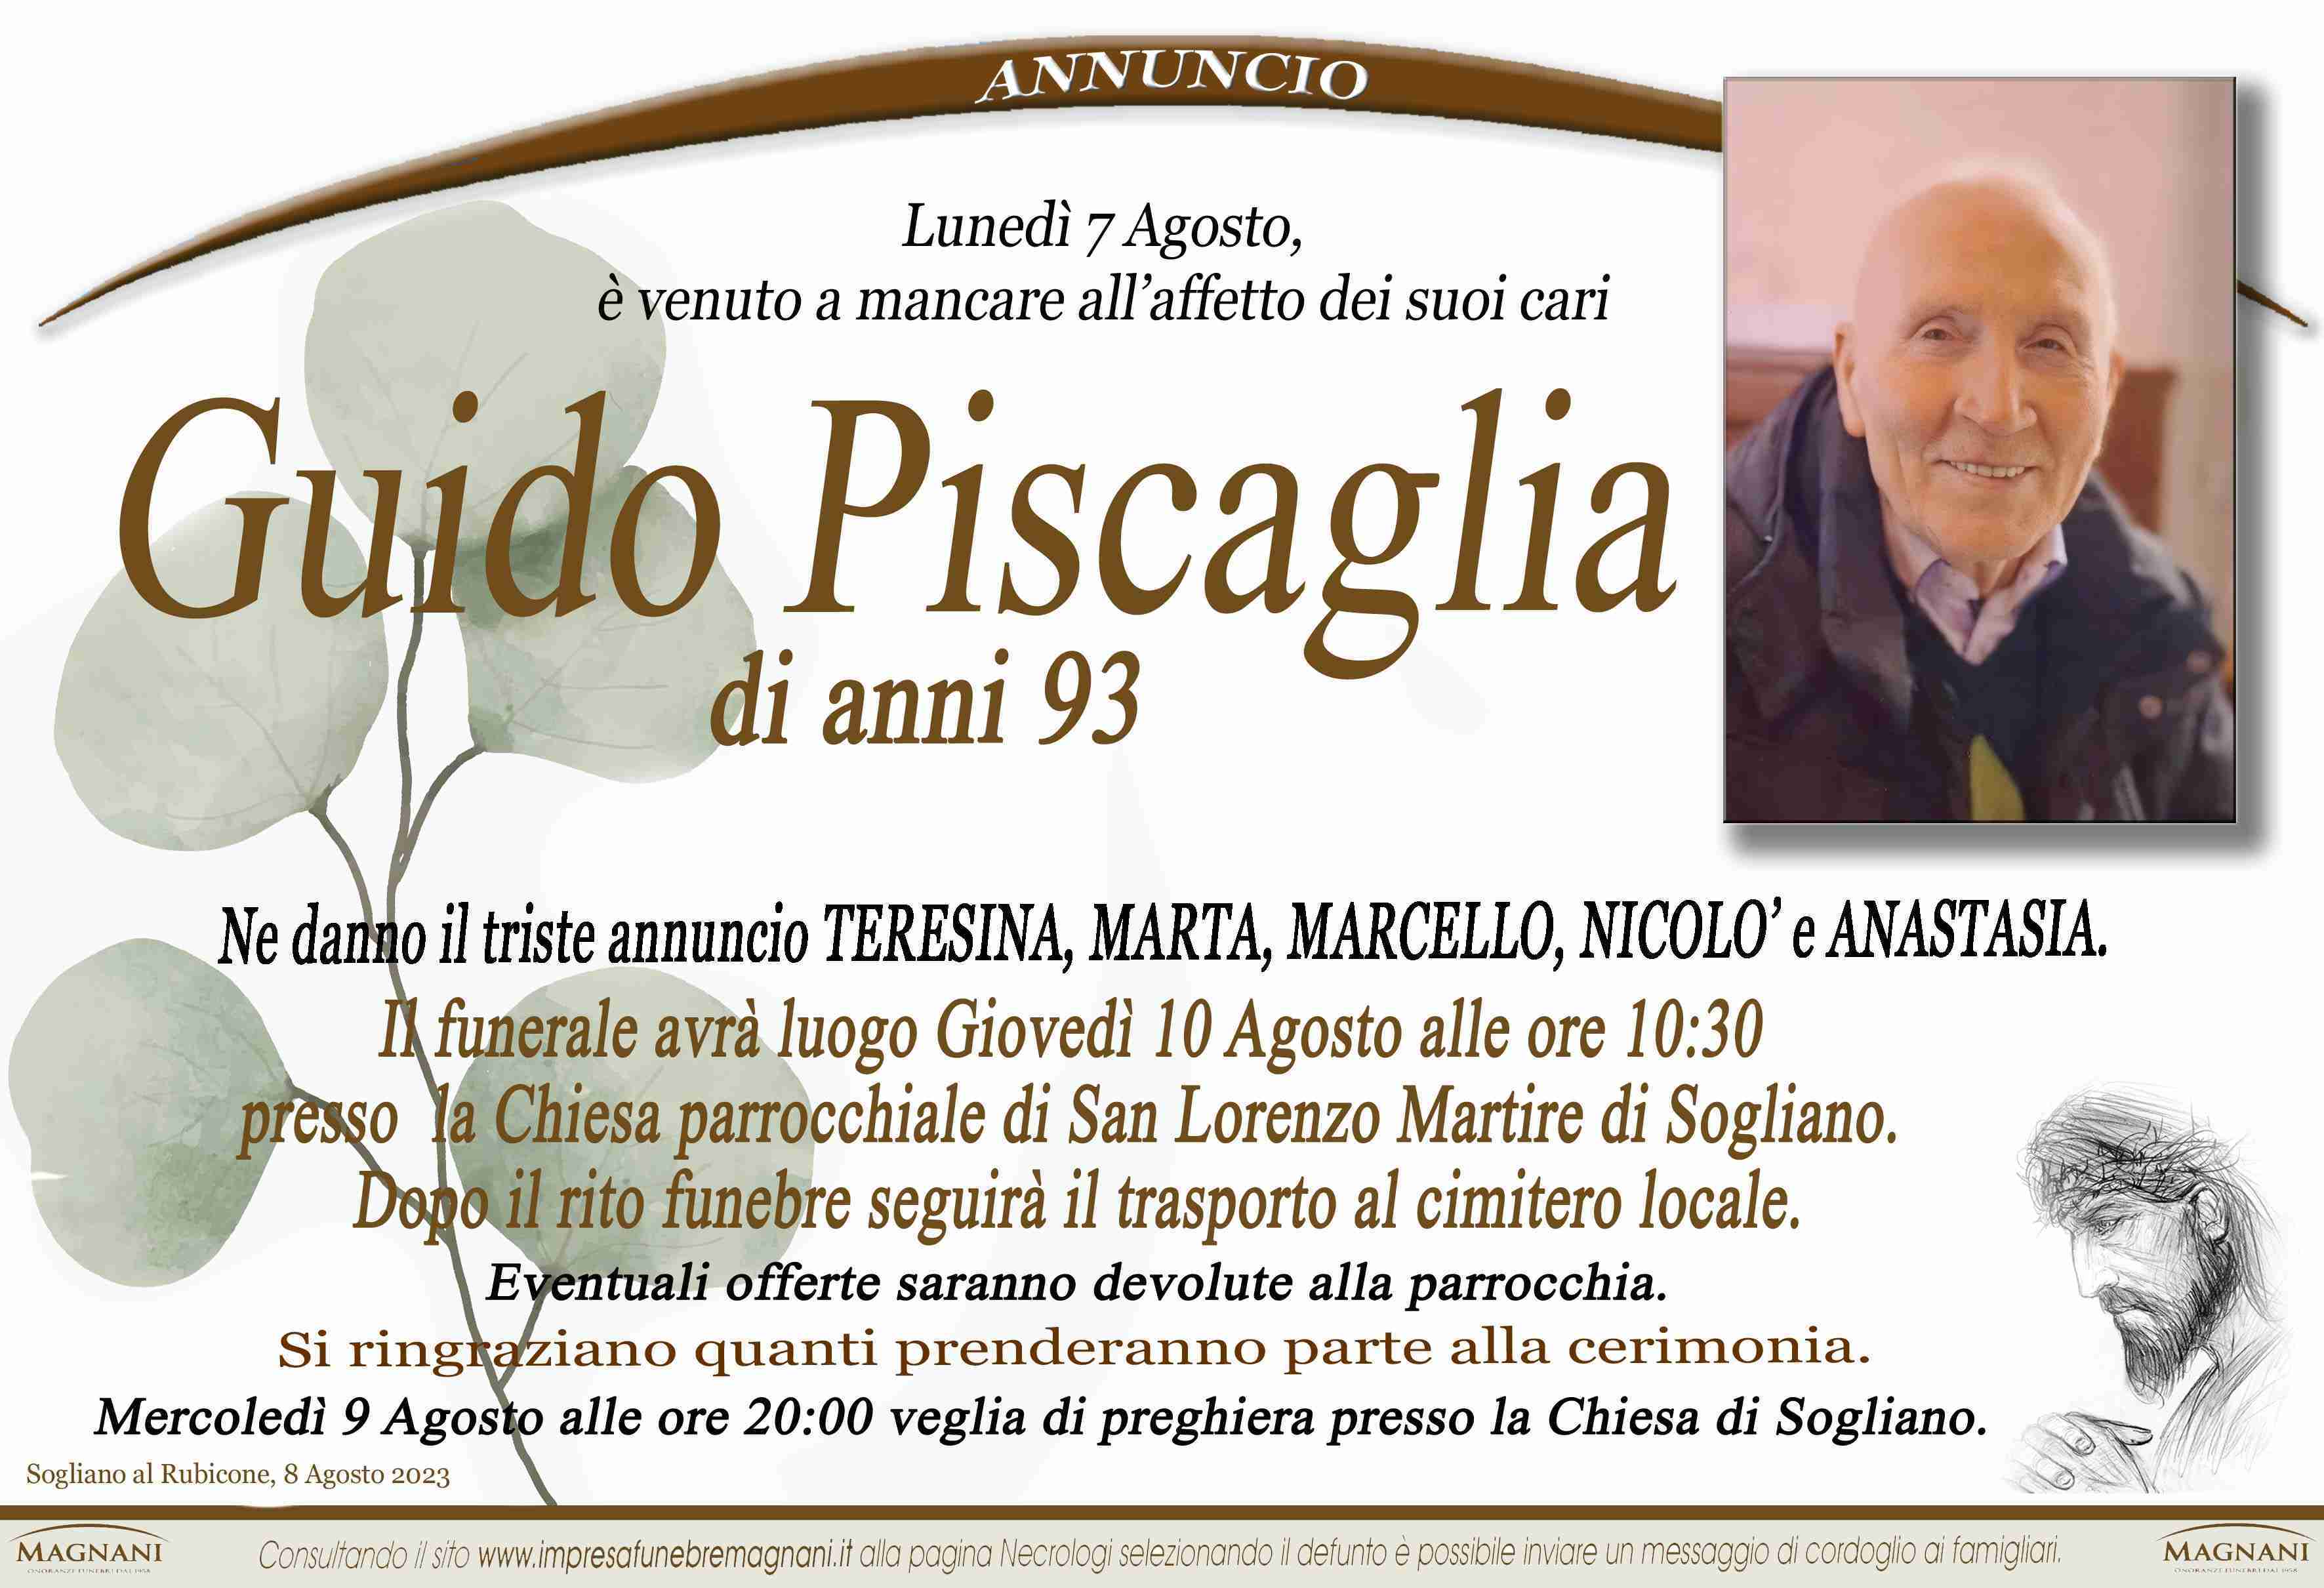 Guido Piscaglia